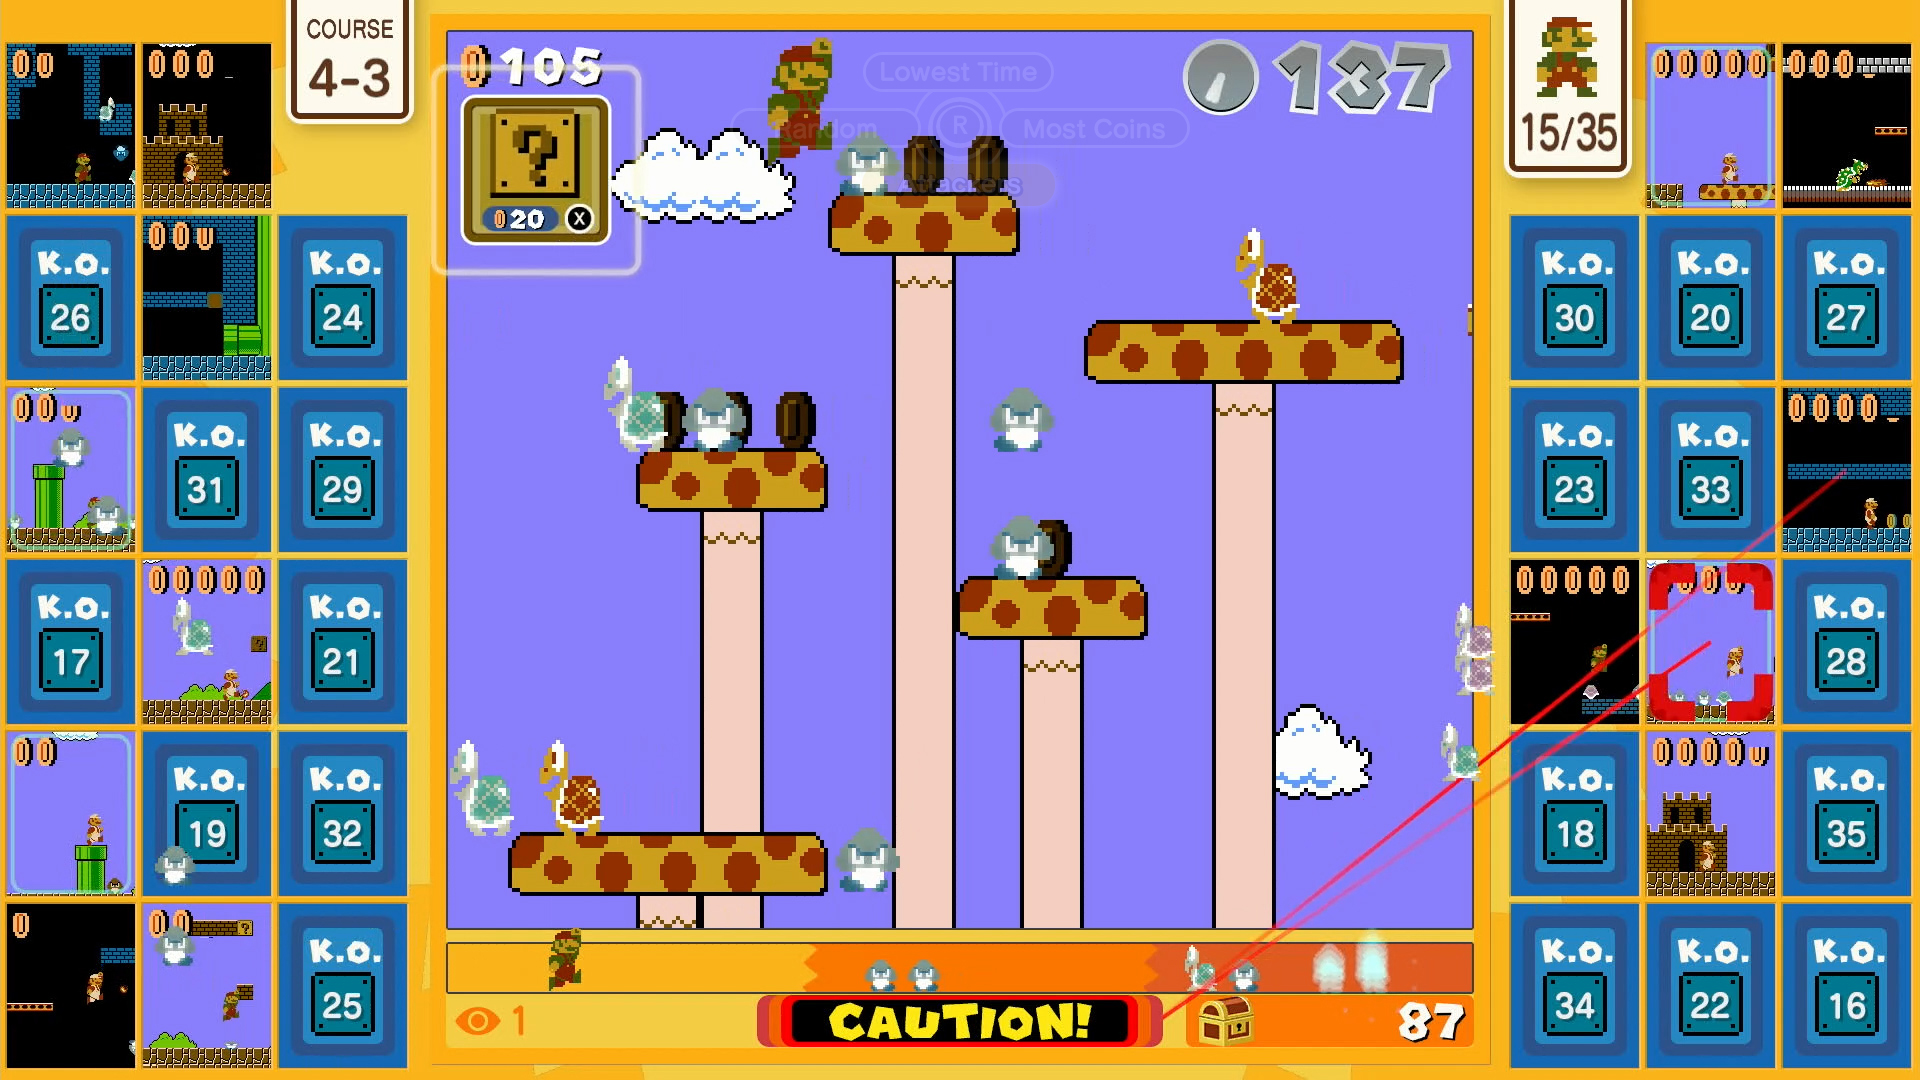 Super Mario Bros. 35, Aplicações de download da Nintendo Switch, Jogos